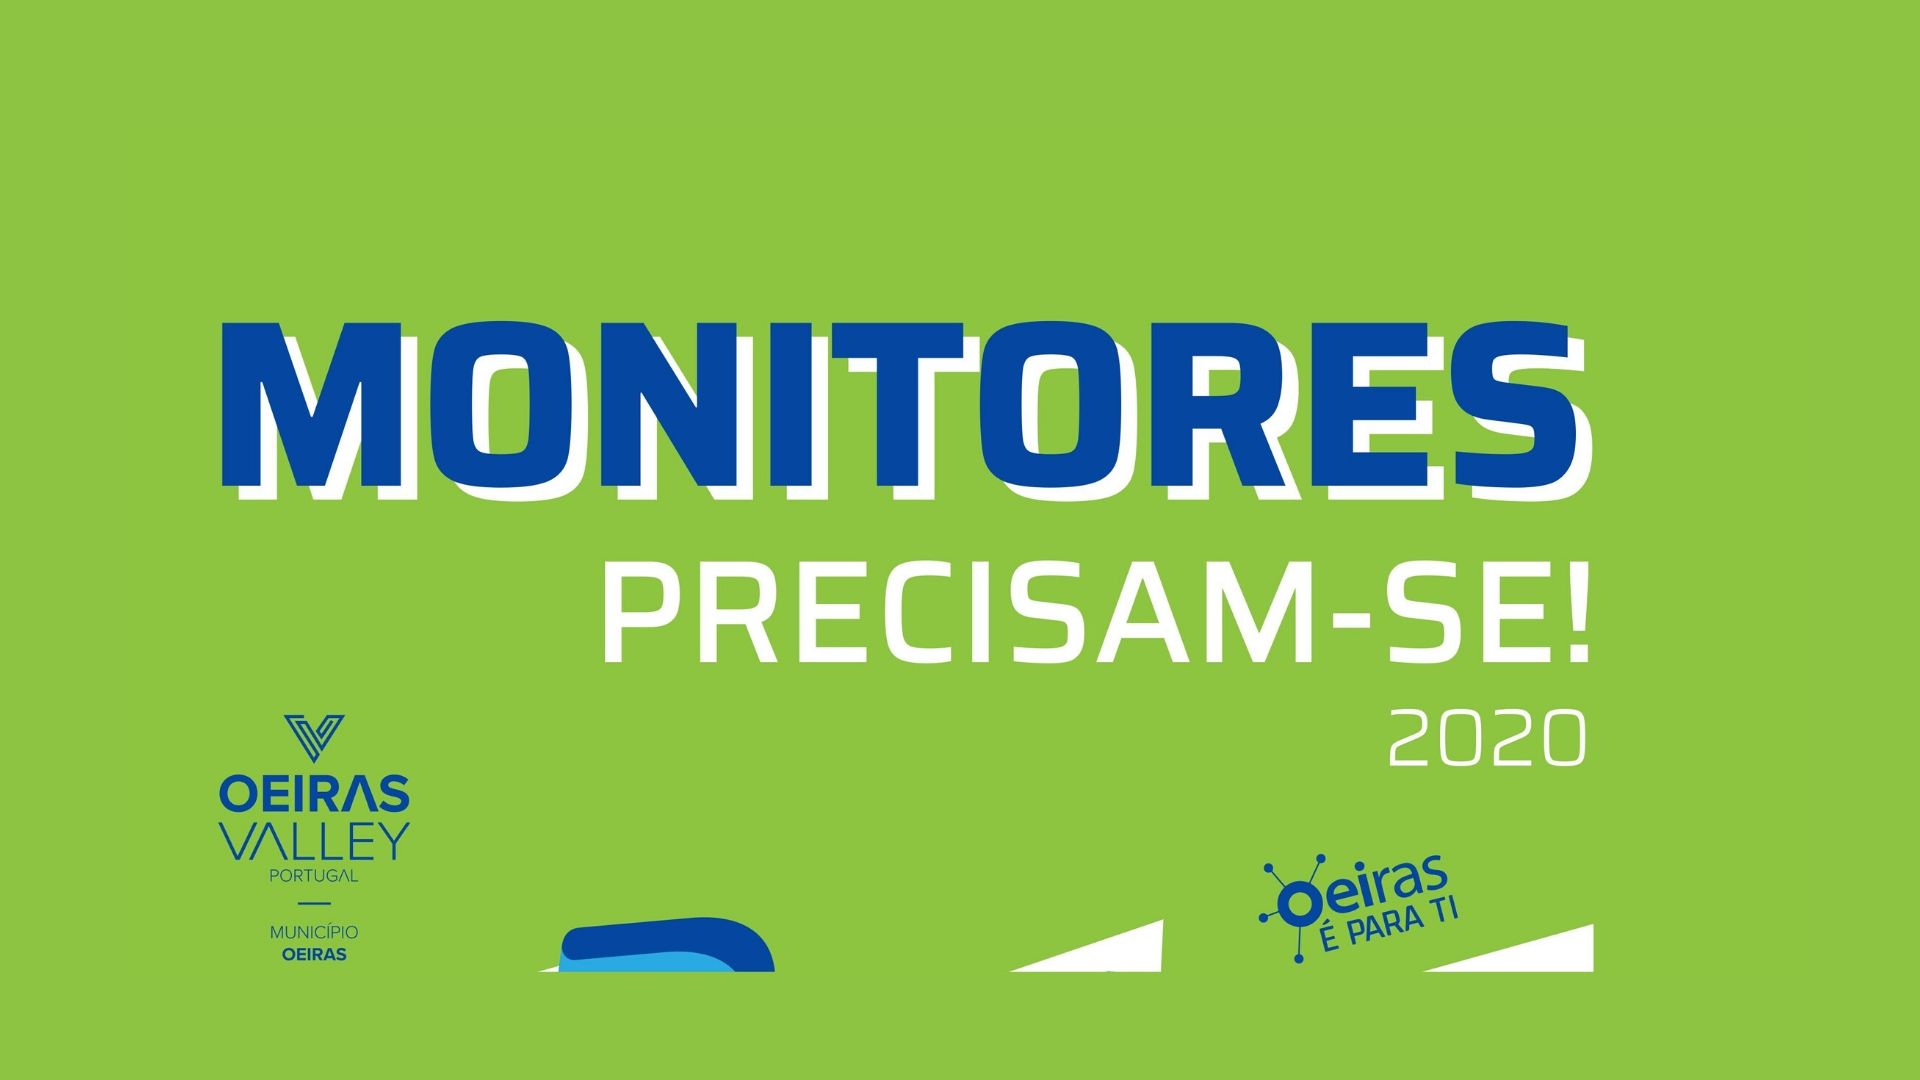 A Câmara Municipal de Oeiras está a recrutar Monitores para atividades entre Junho e Setembro